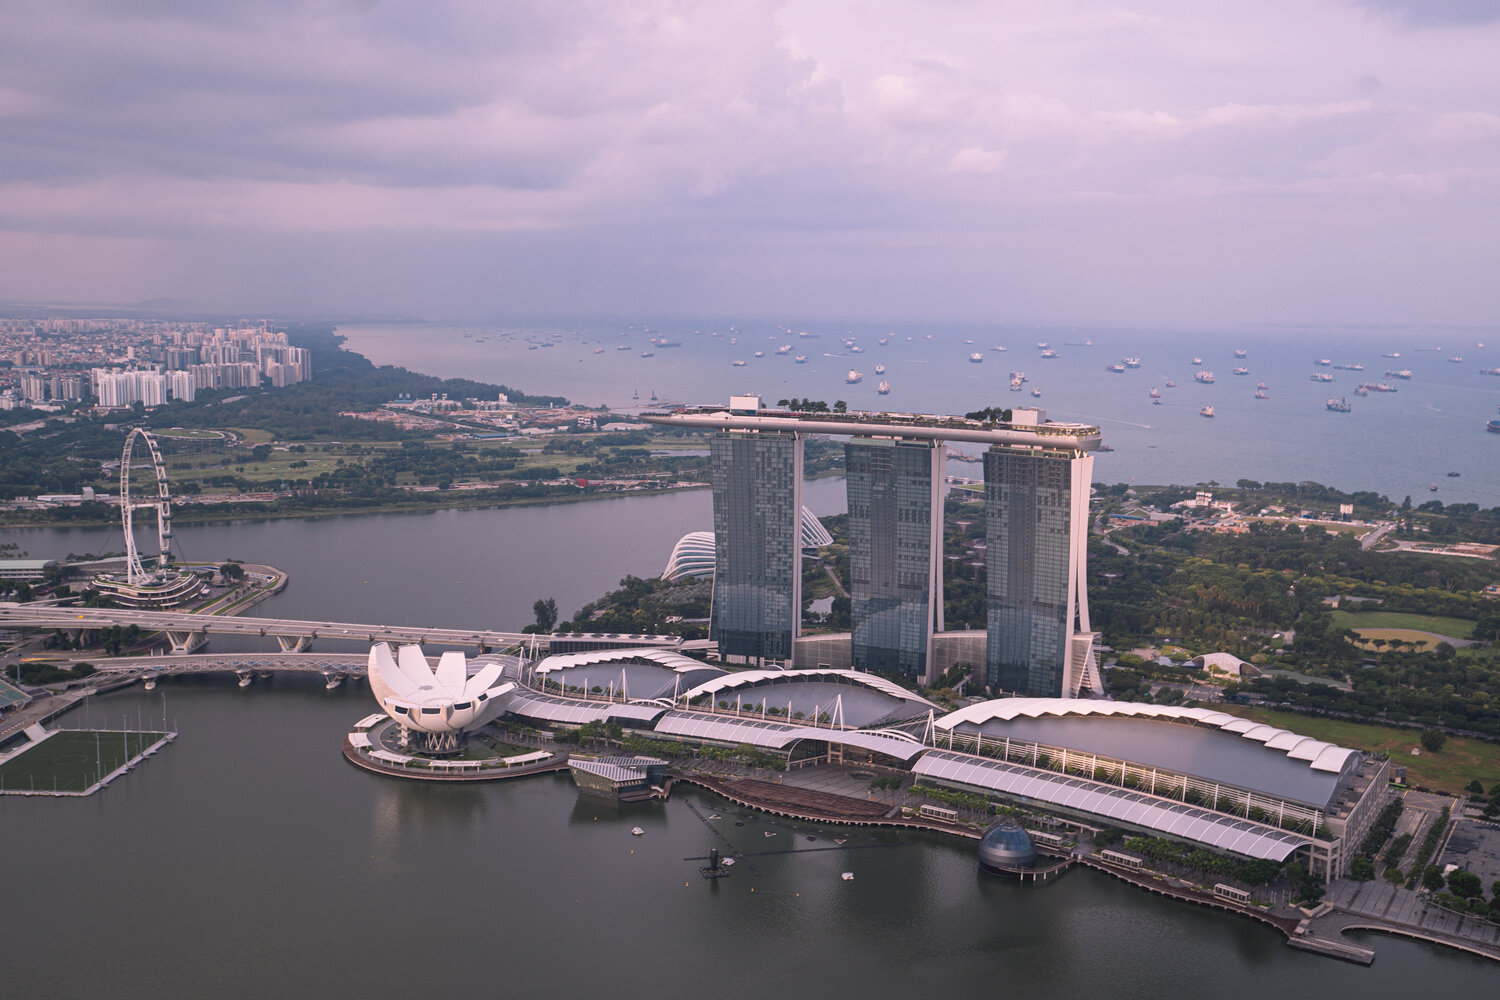 Die Bucht Marina Bay mit dem berühmten Hotel Marina Bay Sands, dem Singapore Flyer und dem ArtScience Museum.